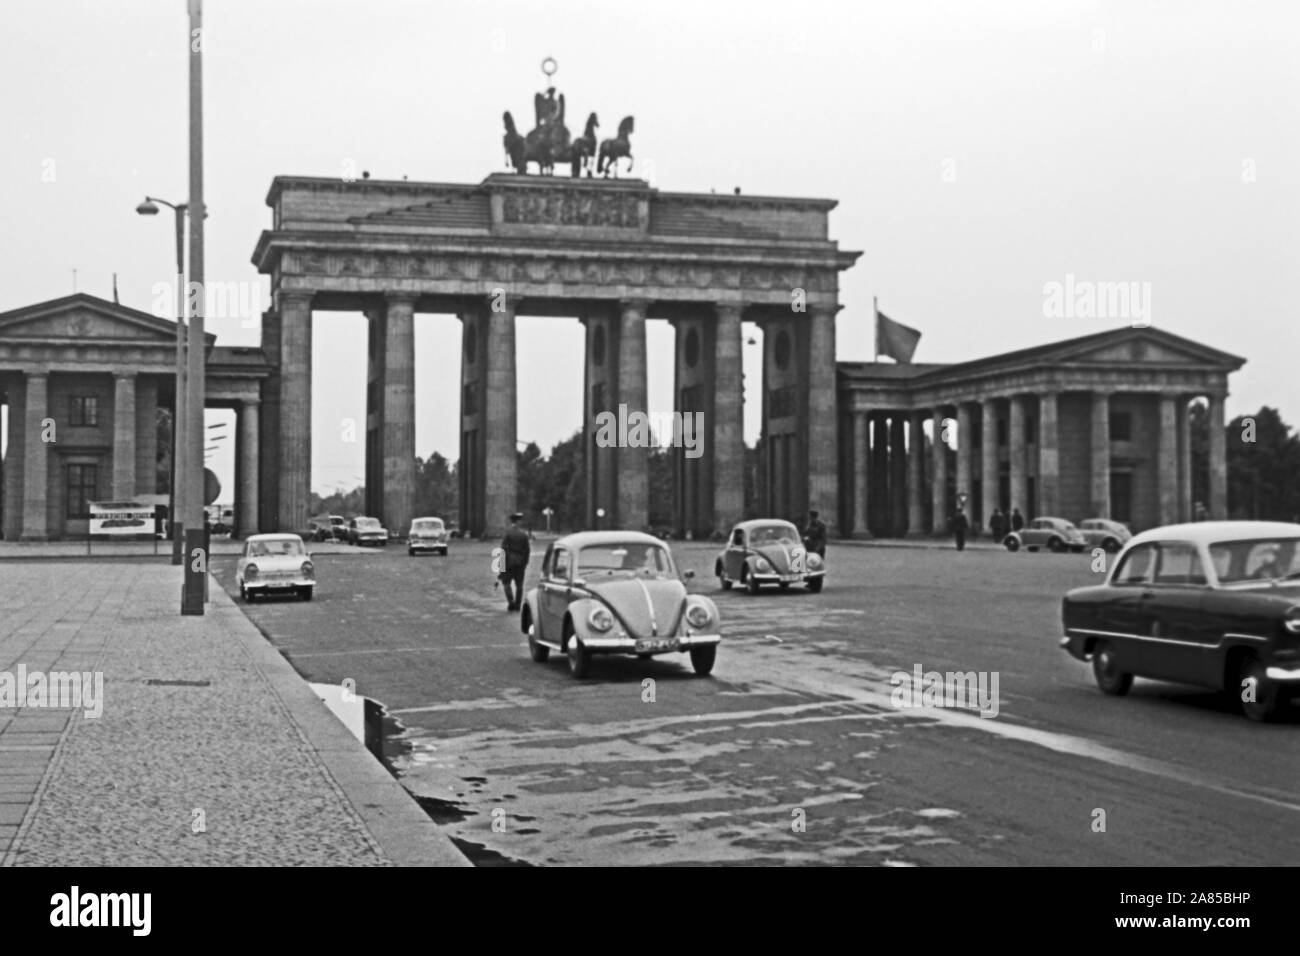 Das Brandenburger Tor in Berlin zwei Wochen vor dem Mauerbau, Deutschland 1961. Brandenburg gate at Berlin, two weeks before the wall was built, Germany 1961. Stock Photo